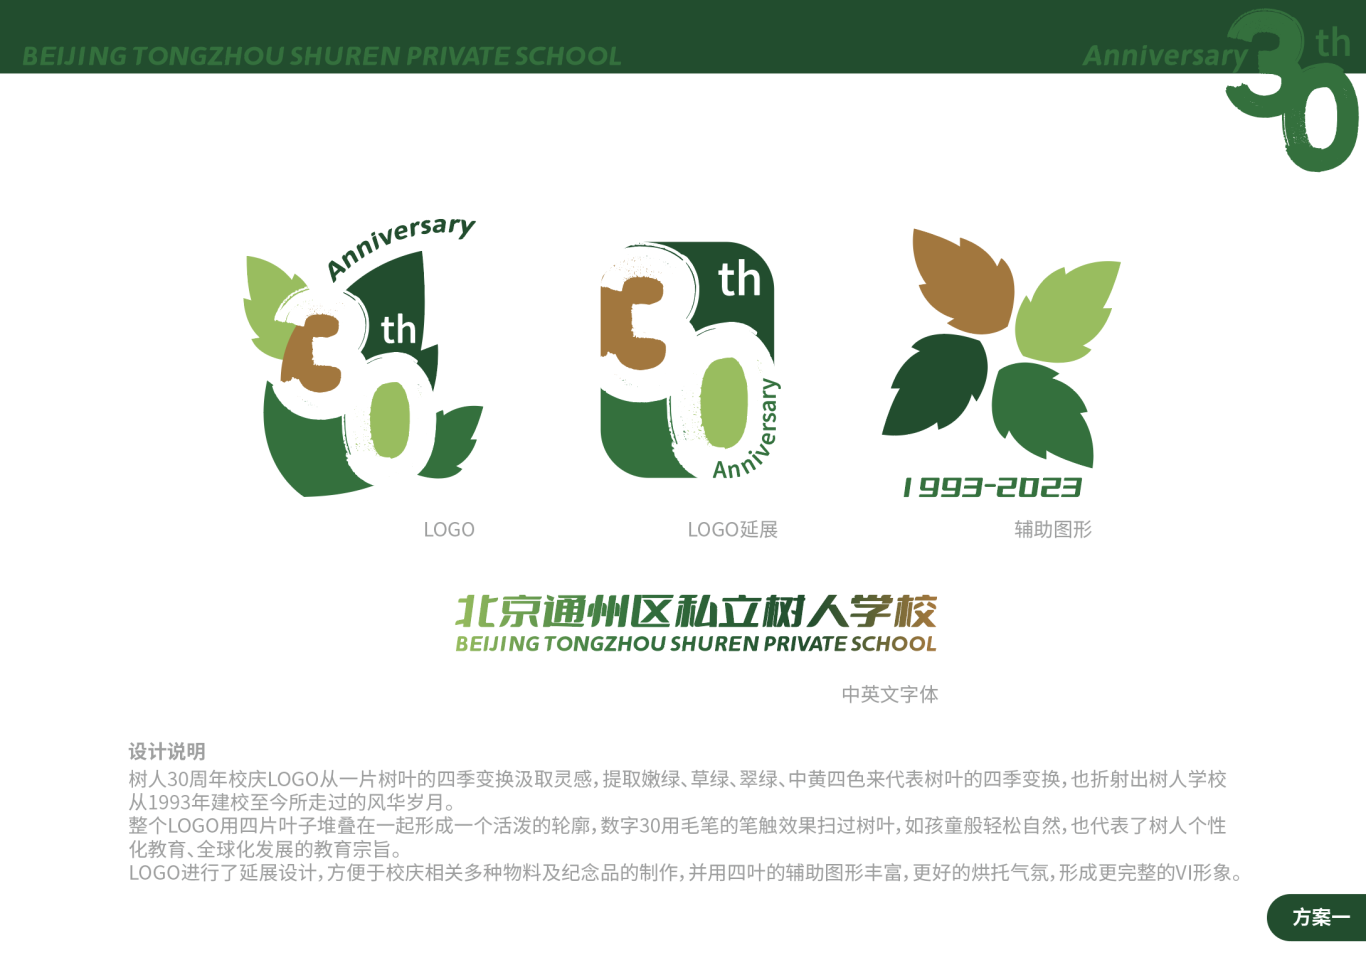 北京通州區私立樹人學校30周年校慶logo圖0